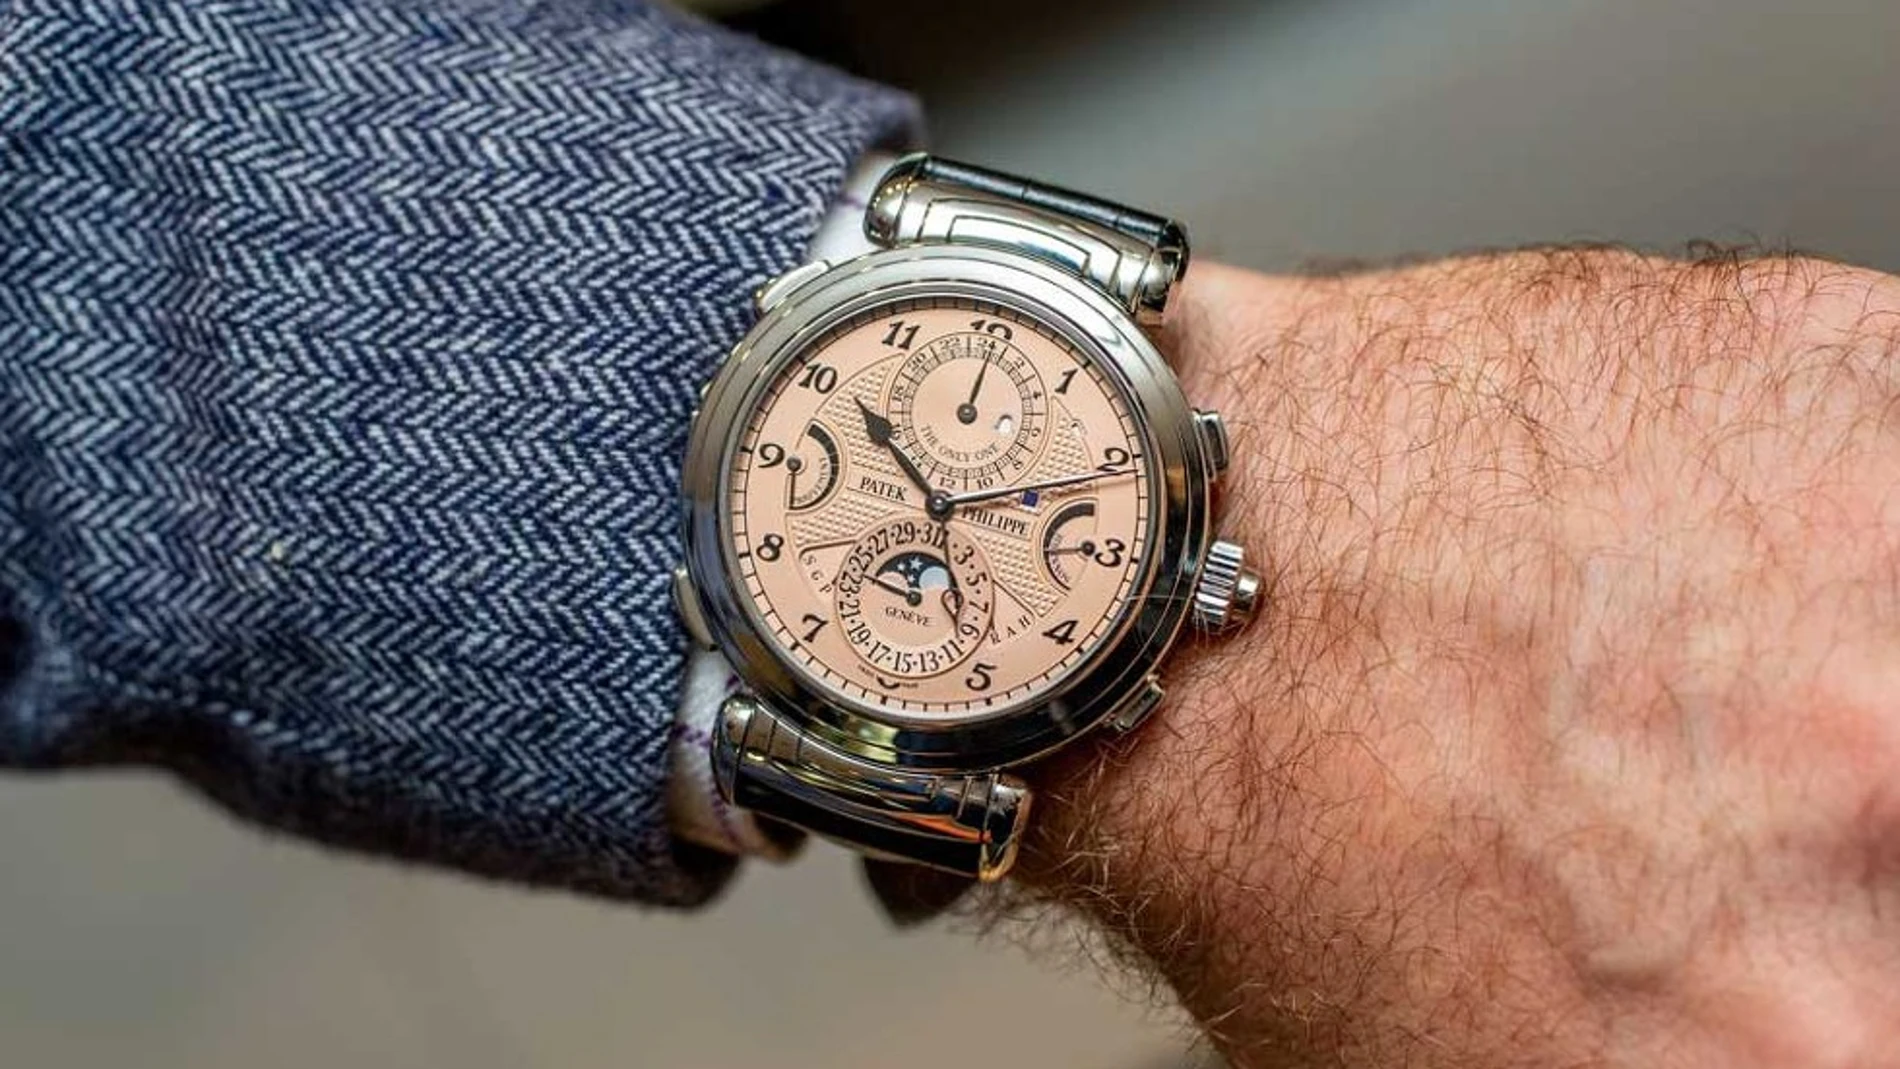 El reloj del mundo fue vendido en esta subasta y costó 28 millones euros